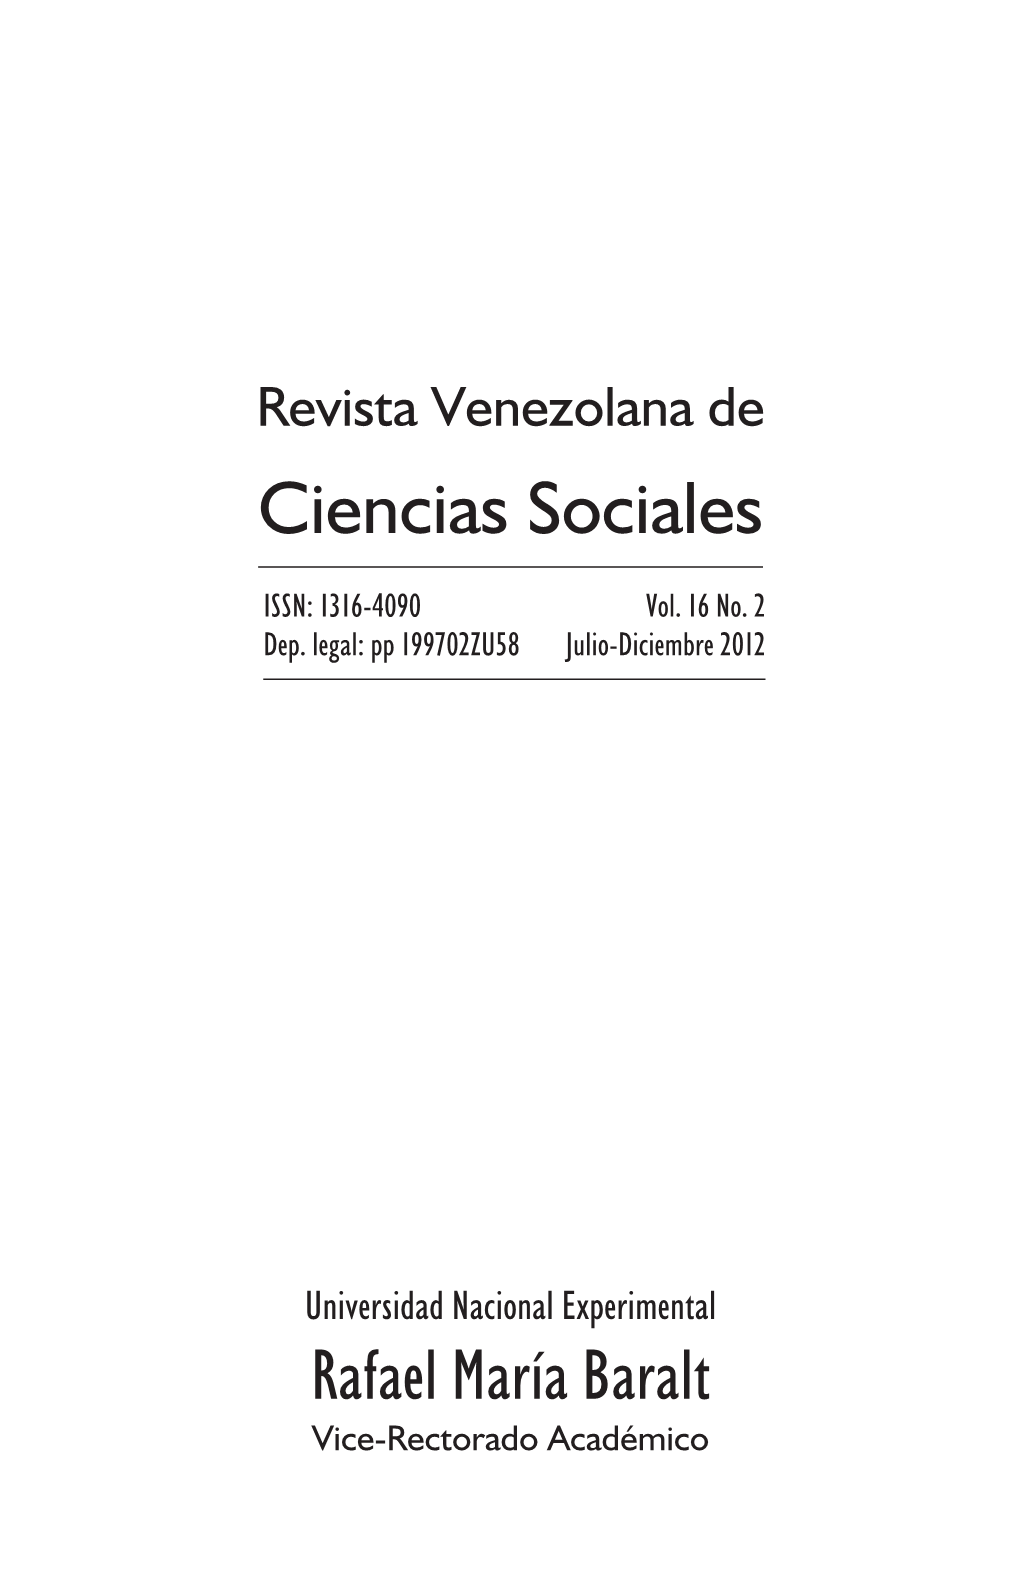 Revista Venezolana De Ciencias Sociales